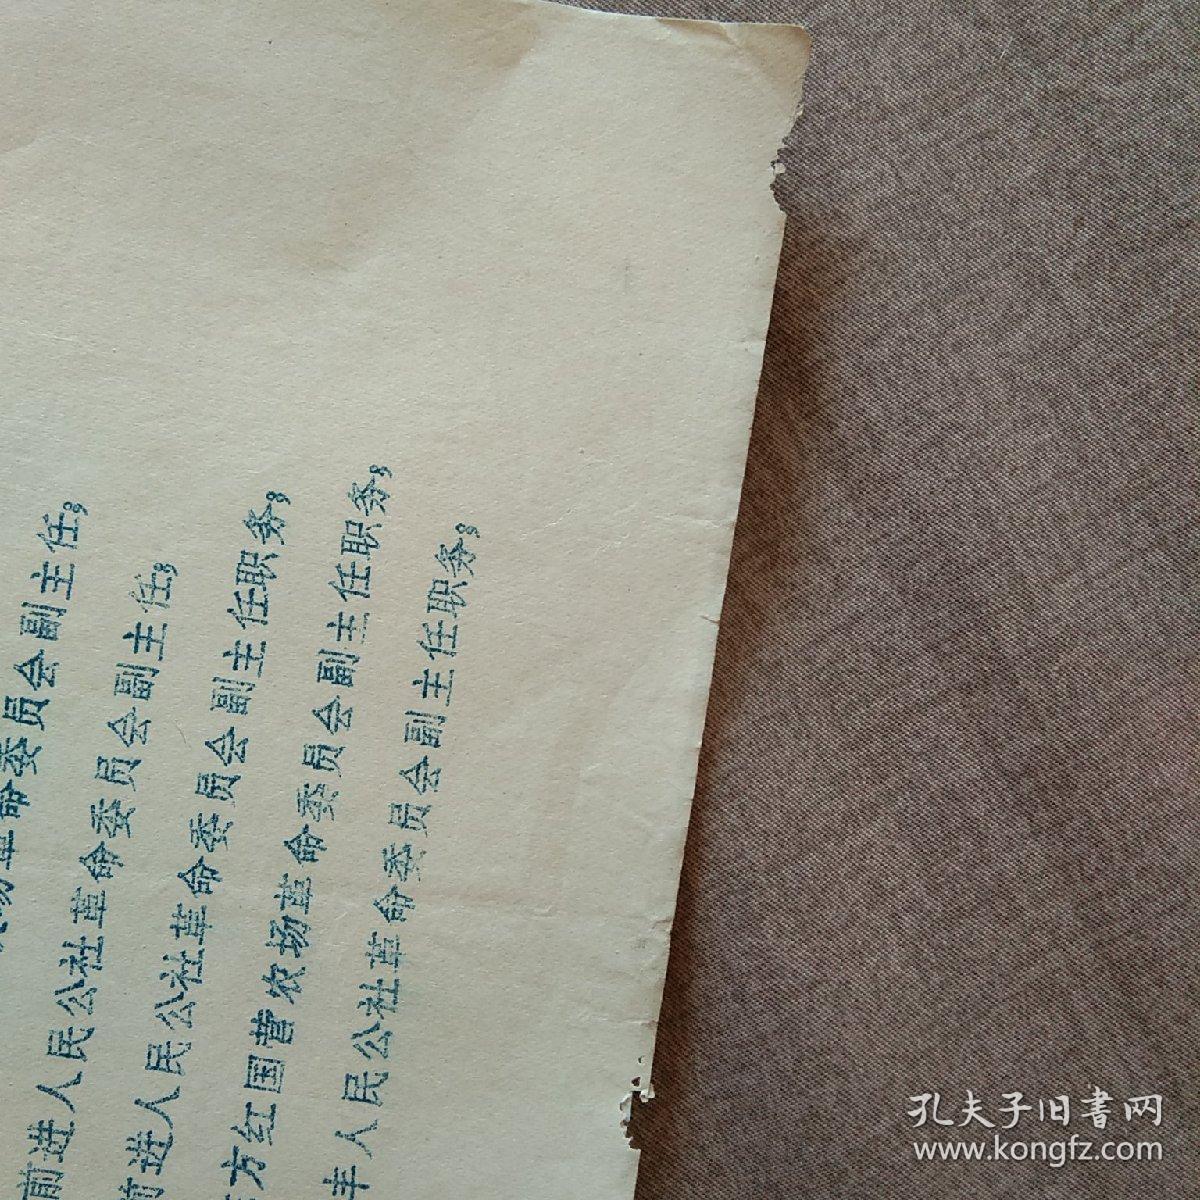 喀左县“关于张润生等同志任免职务”的通知
1971年3月